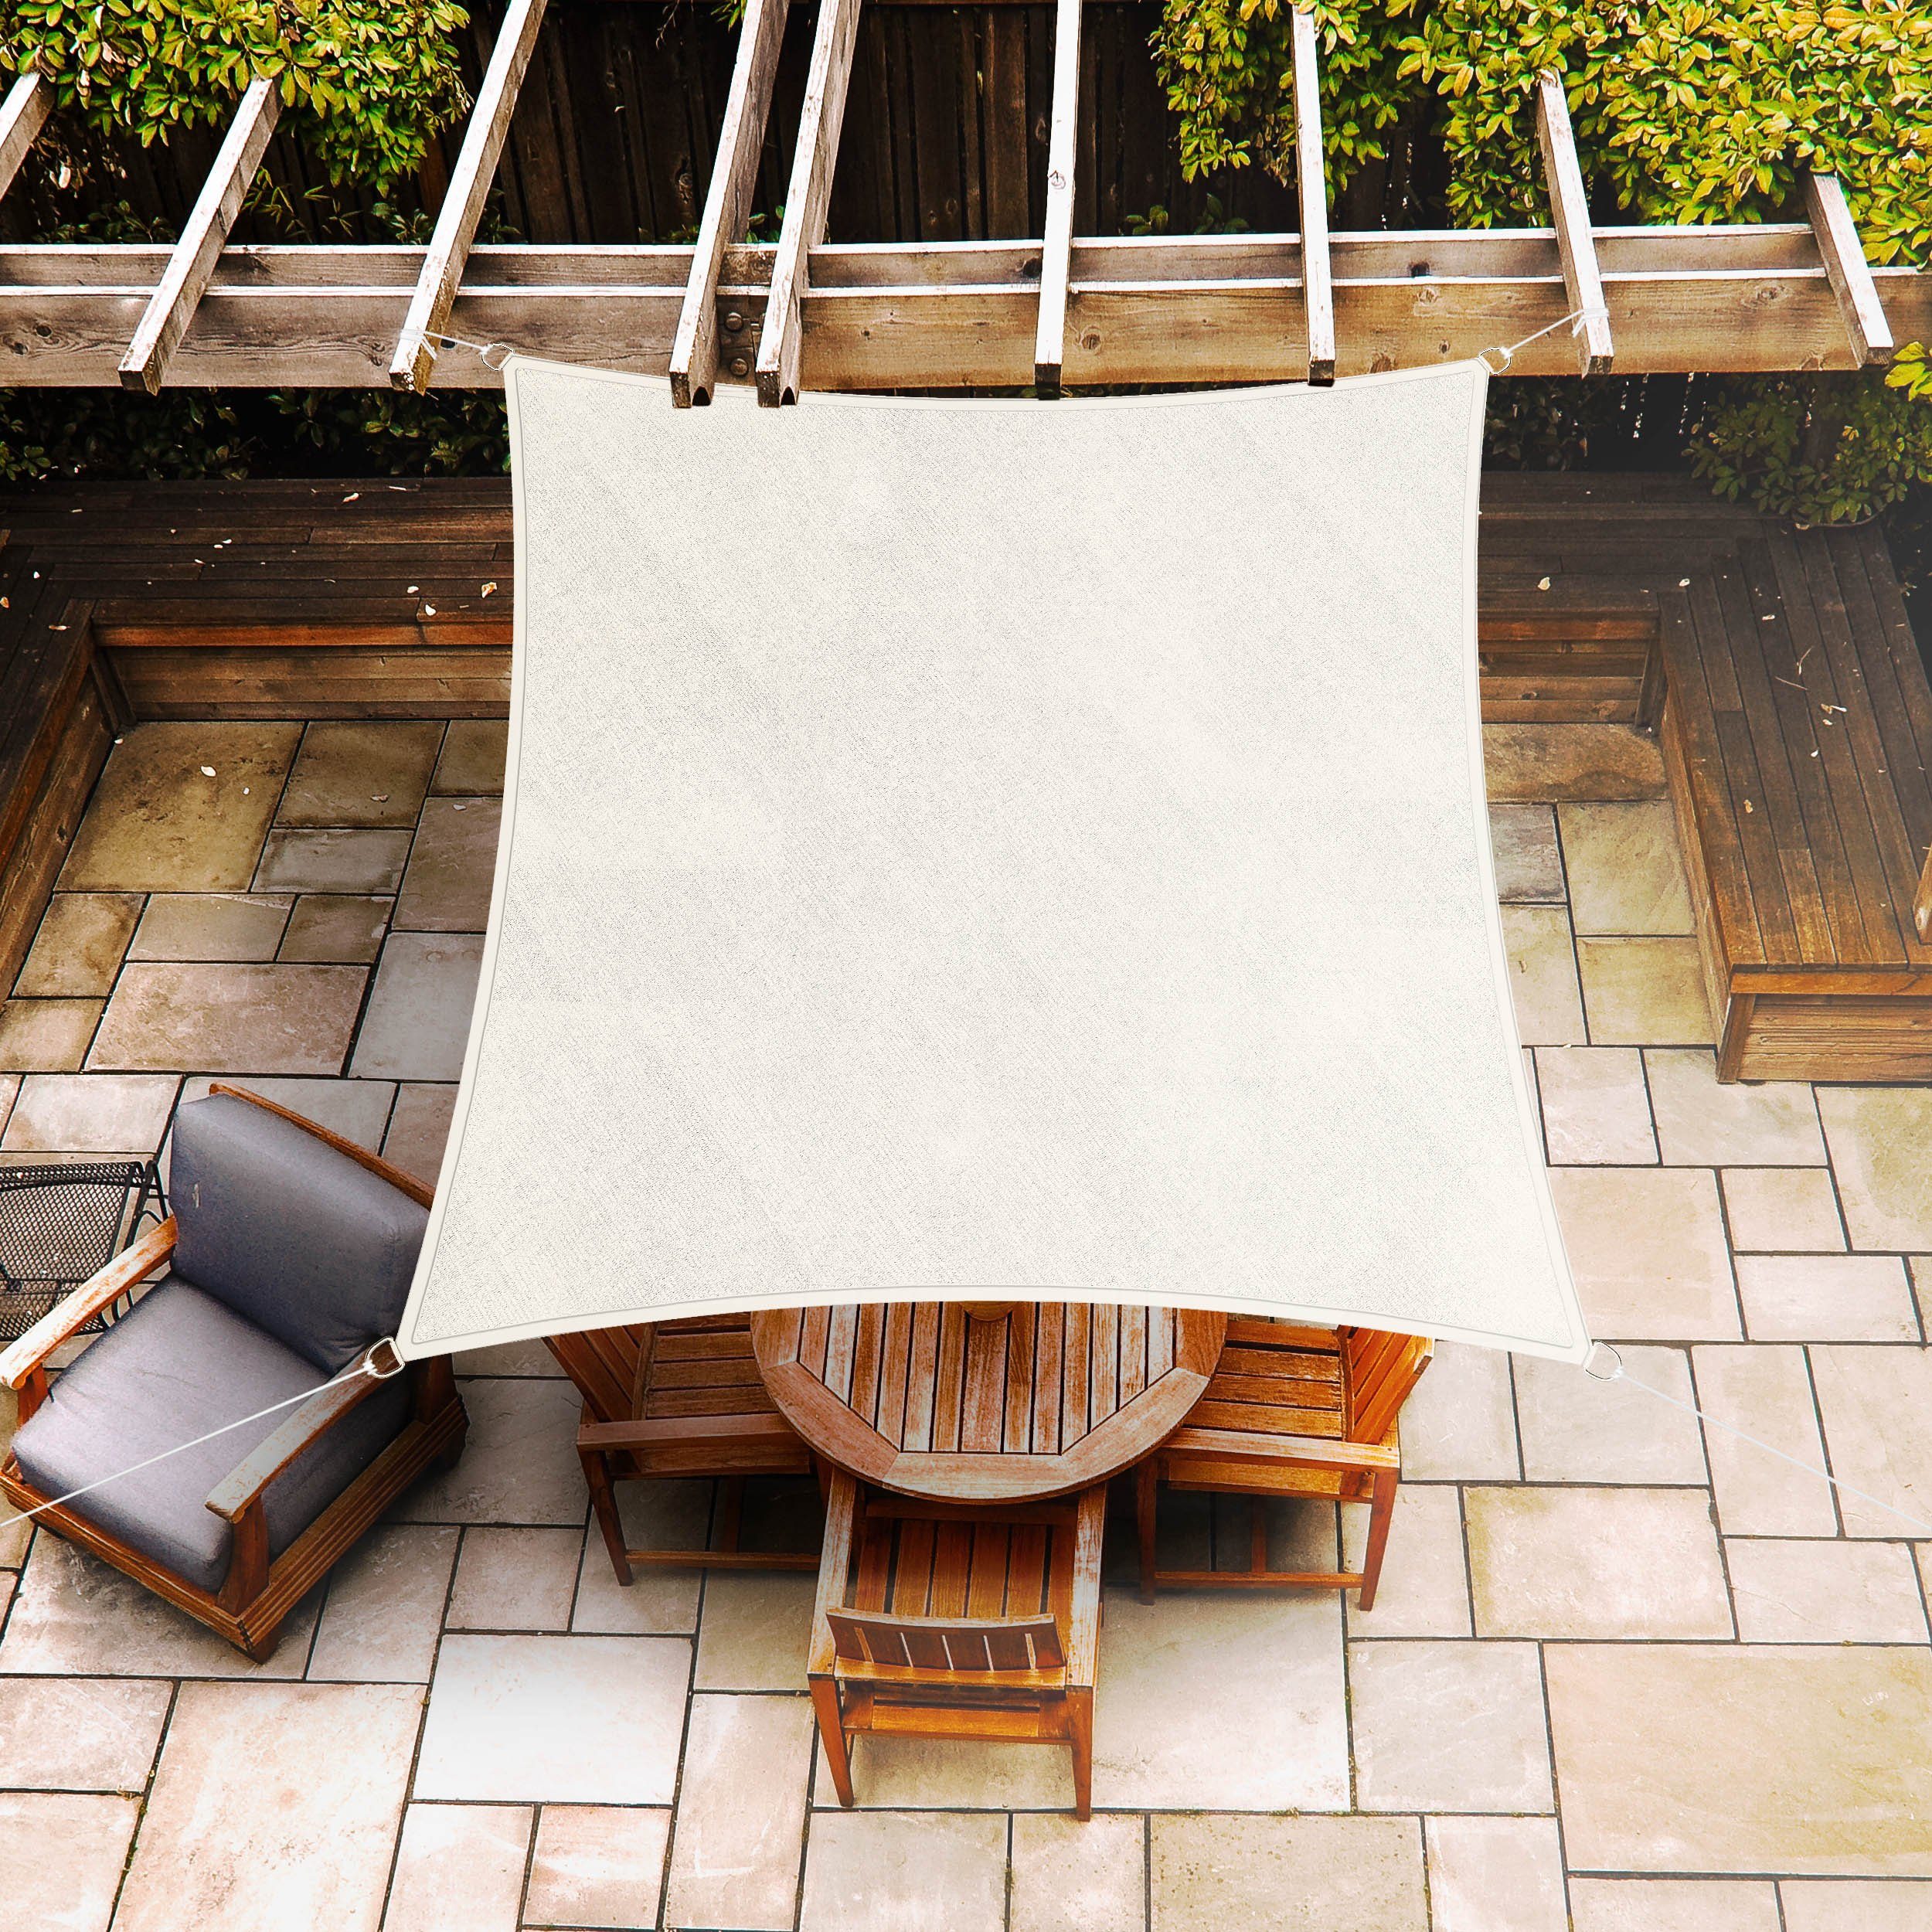 Hometex Premium White stabil Schattenspender - Terrasse Sonnenschutz stabiler und vielseitig, robuster robust, Windschutz Textiles und Balkon für & Sonnensegel Garten